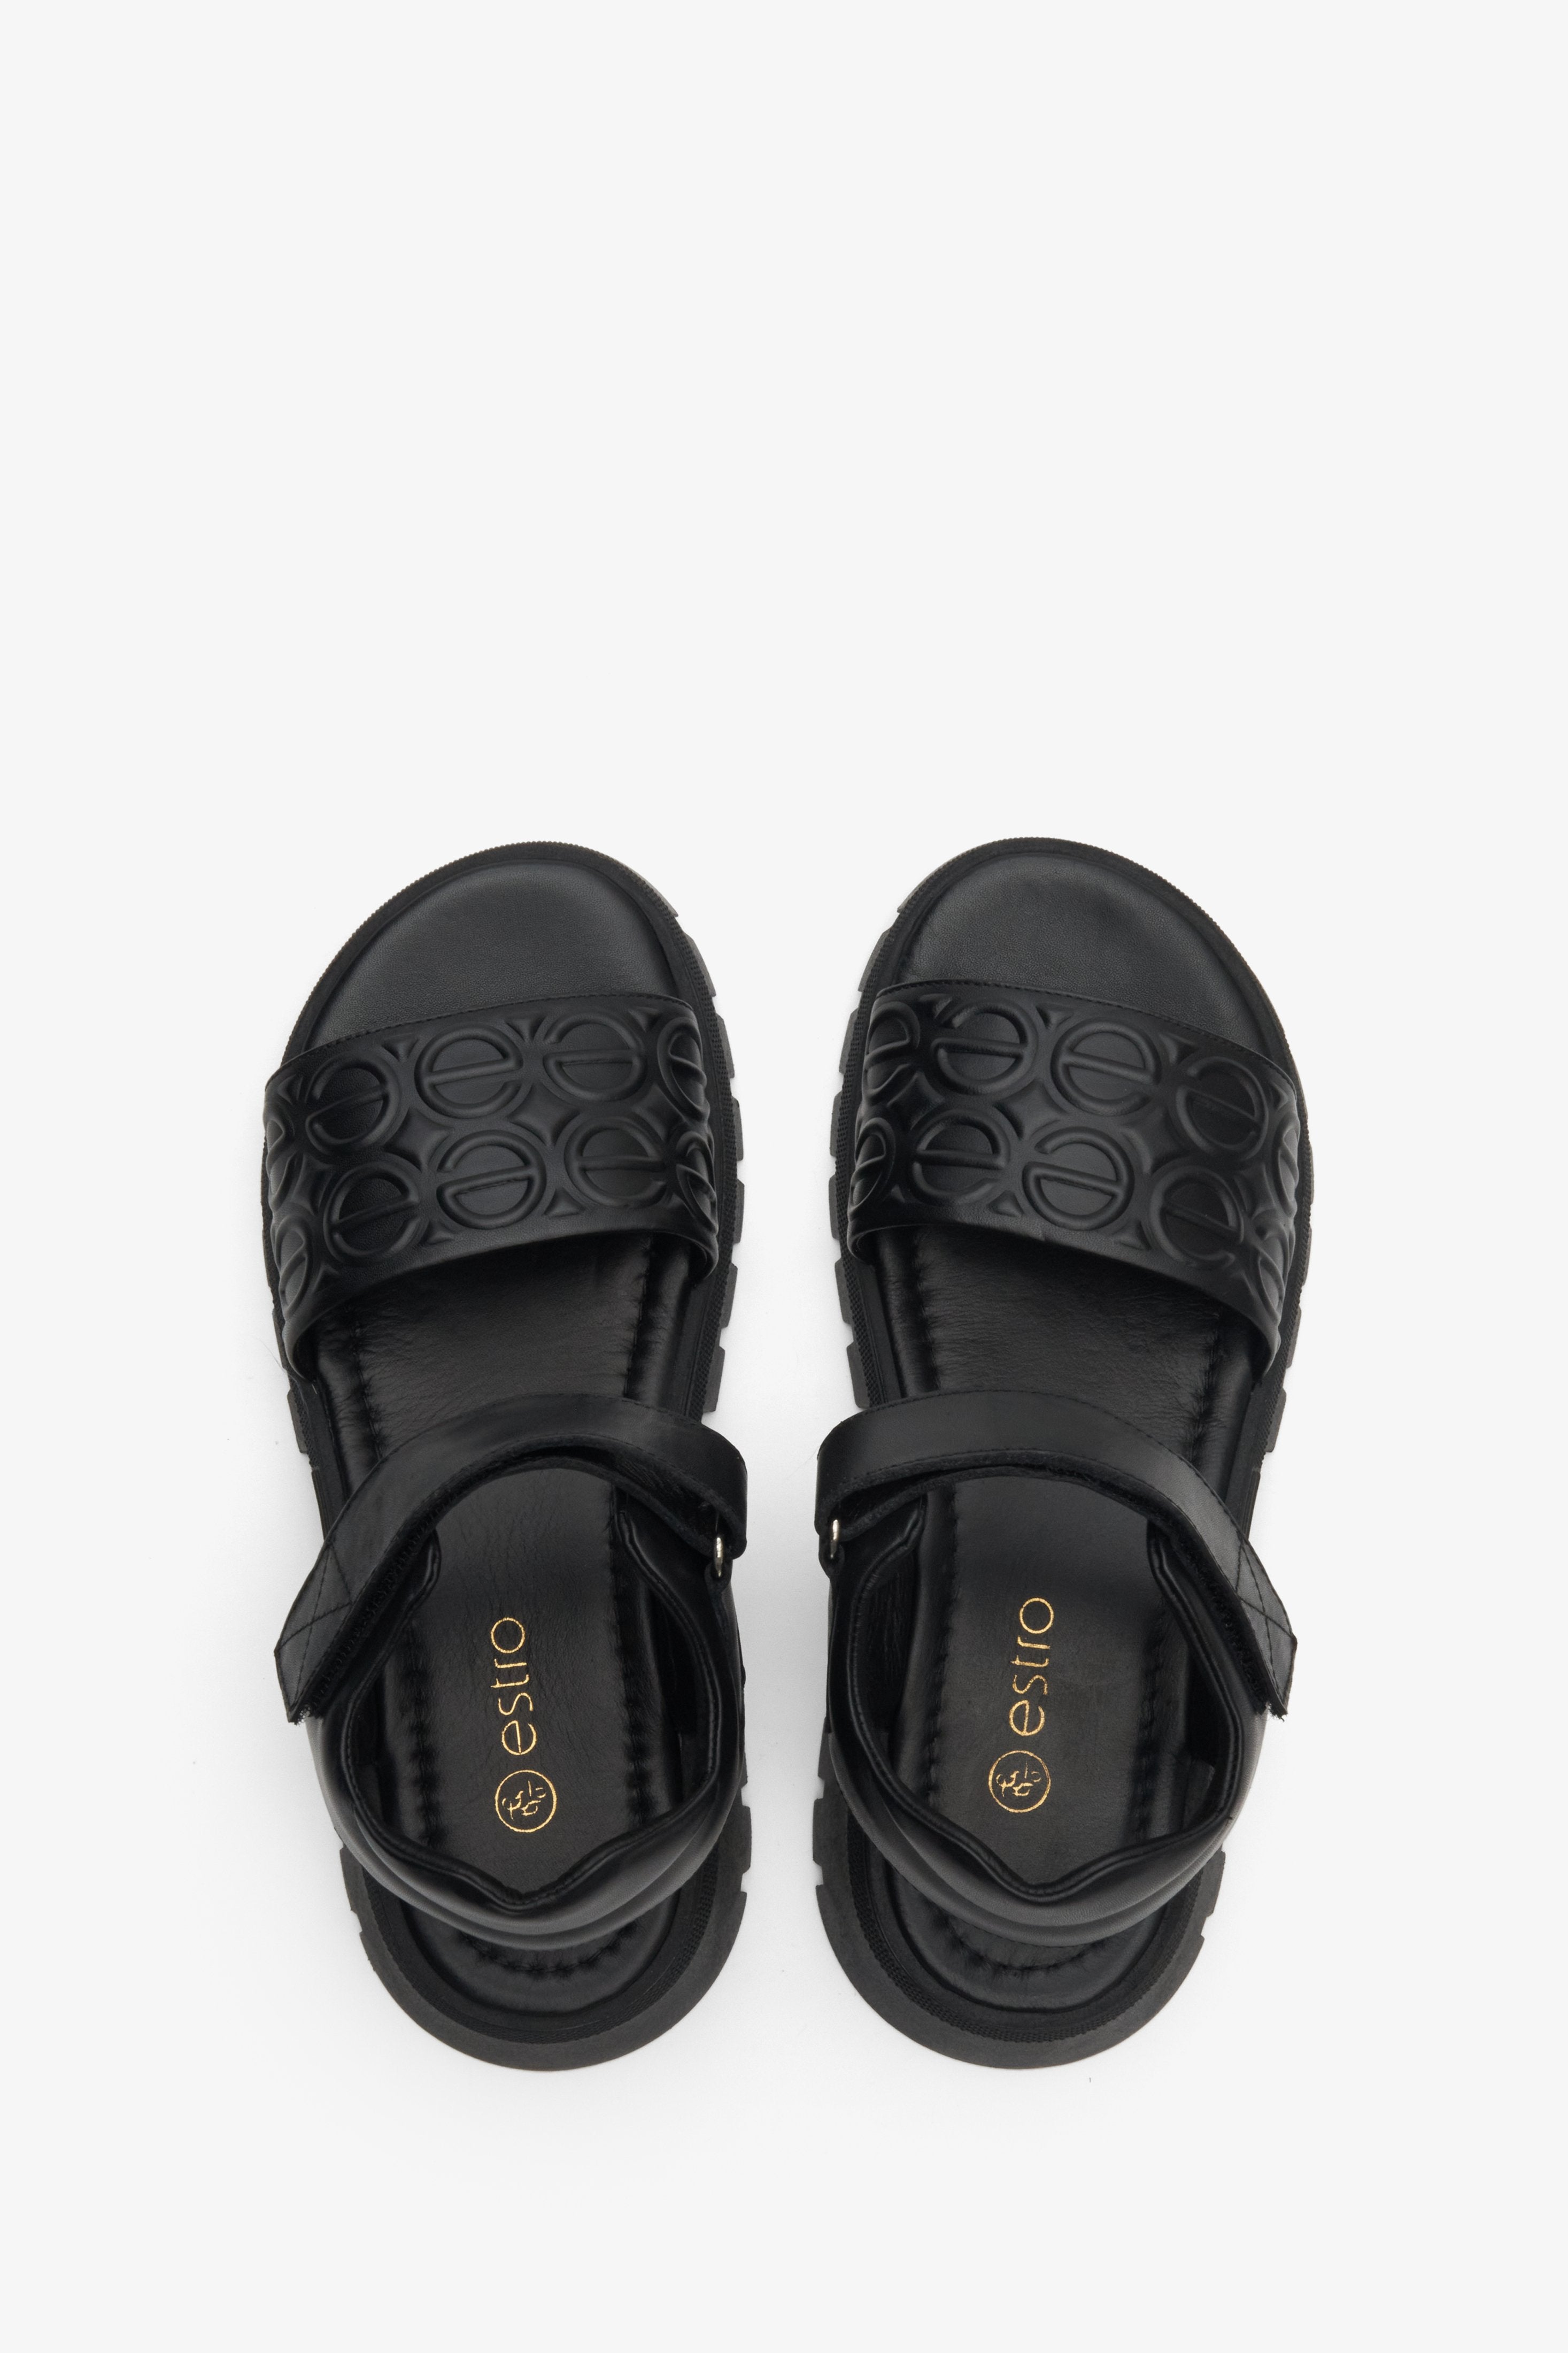 Damskie, skórzane sandały damskie zapinane na rzep w kolorze czarnym Estro - prezentacja modelu z góry.